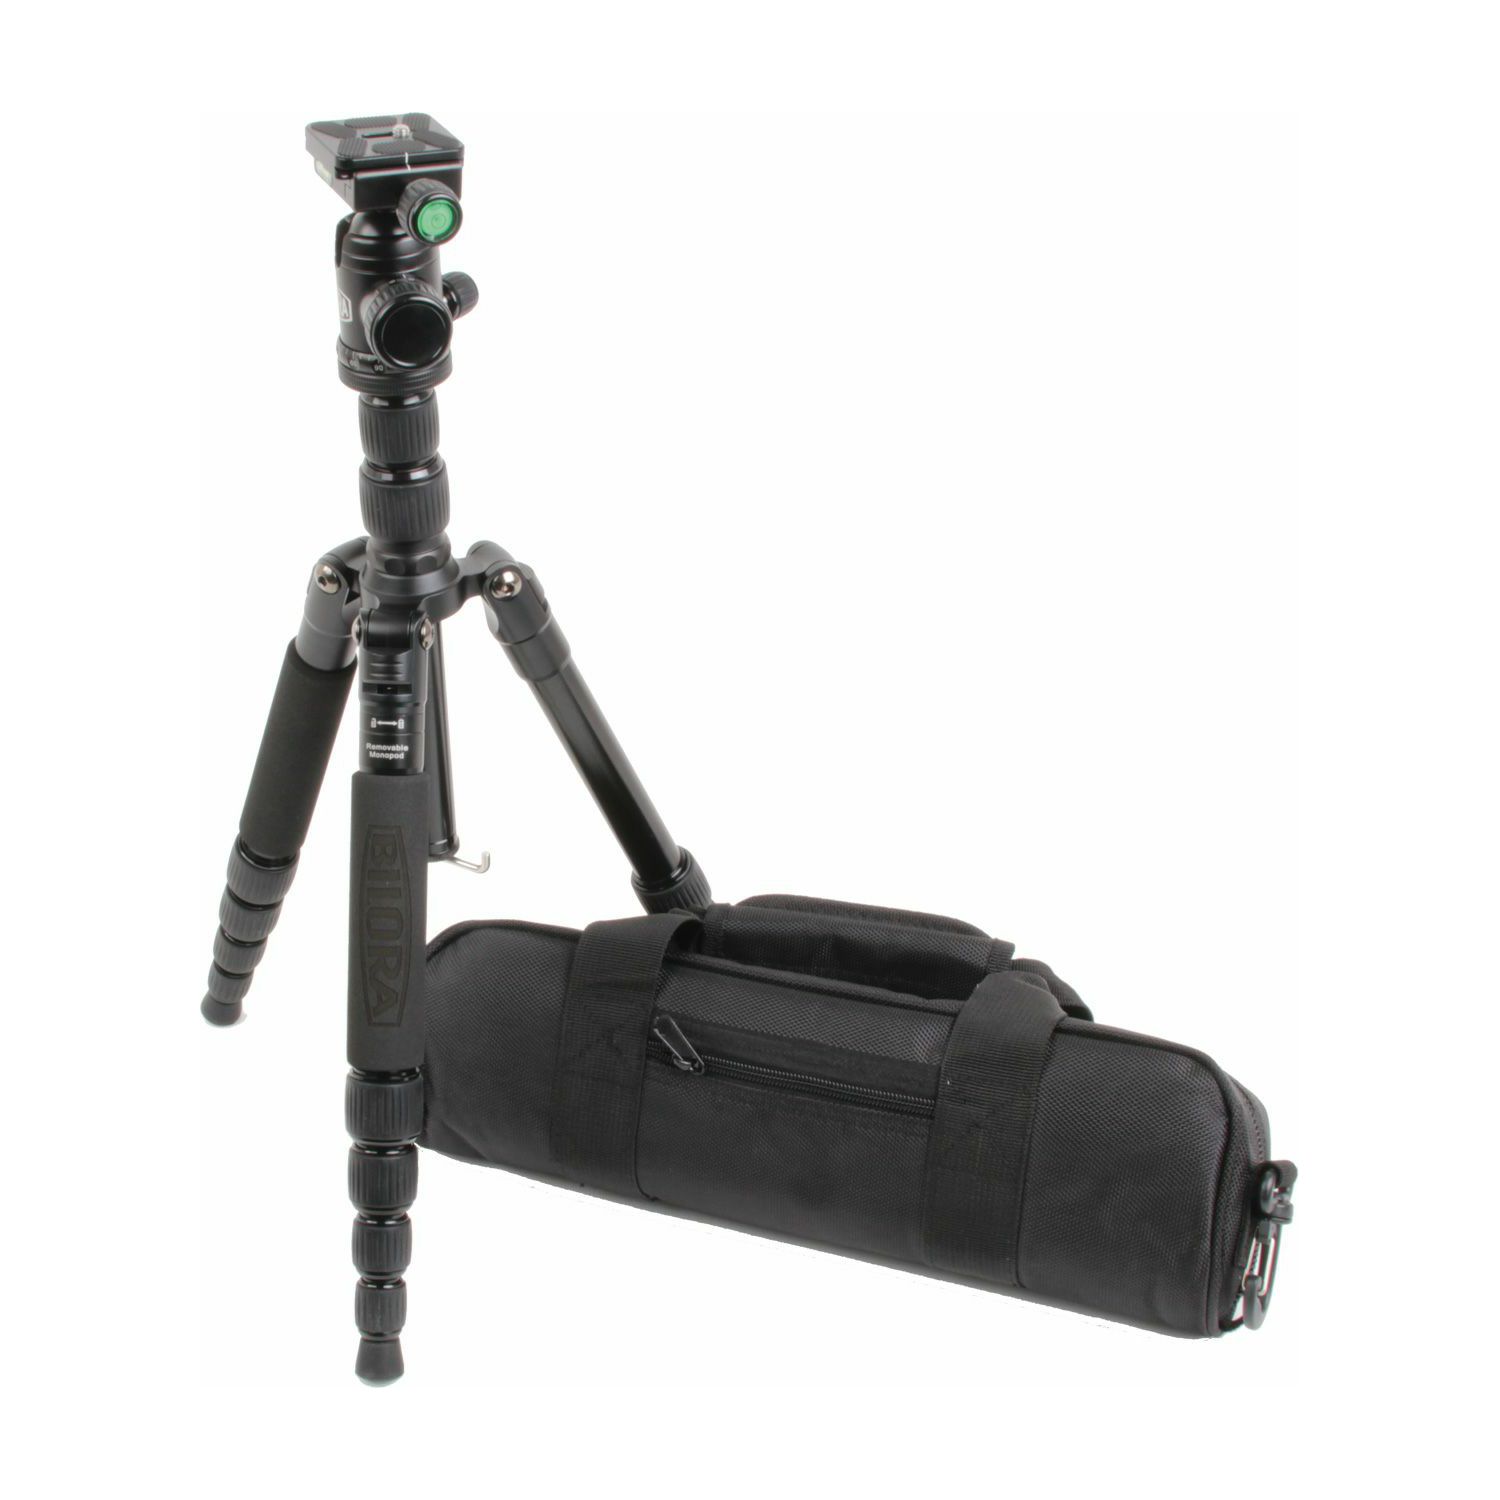 Bilora Twister Pro II Travel Black 130cm 6kg schwarz crni stativ za fotoaparat tripod + ball head kuglasta glava (TP225-1)